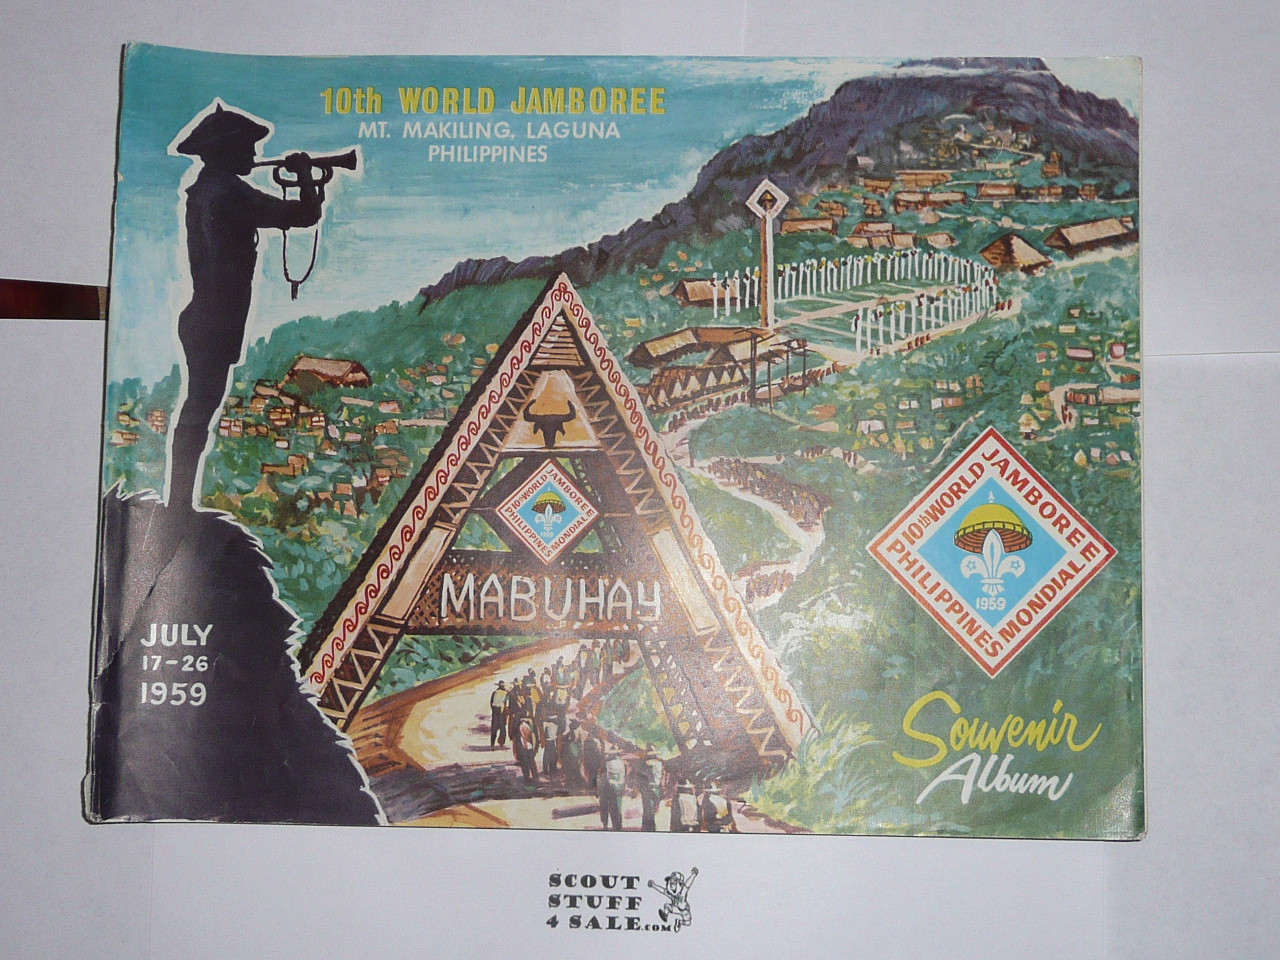 1959 World Jamboree Official Souvenir Album, 147 pages